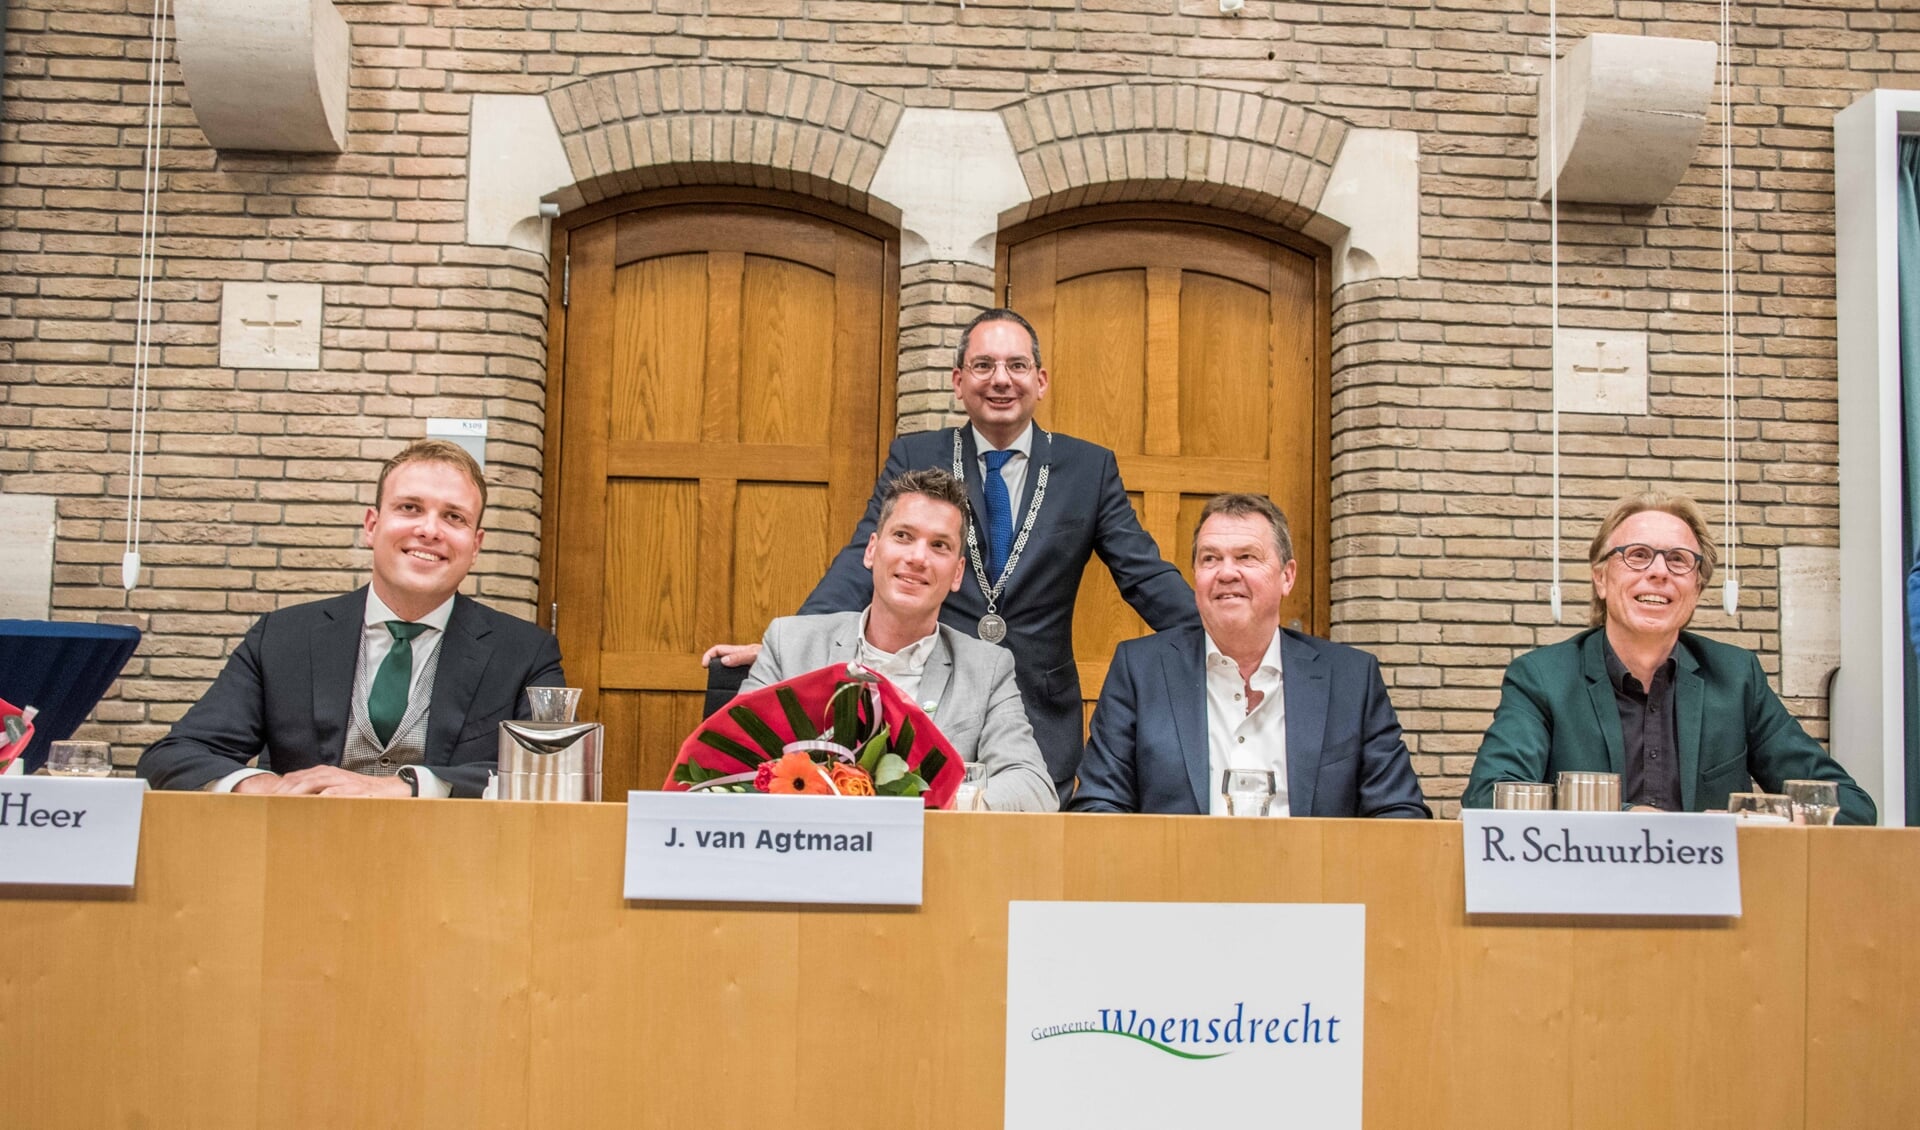 Het nieuwe collegevan de gemeente Woensdrecht, met van links naar rechts wethouders Thierry de Heer, Jeffrey van Agtmaal, Rainier Schuurbiers en Lars van der Beek. Staand burgemeester Steven Adriaansen.